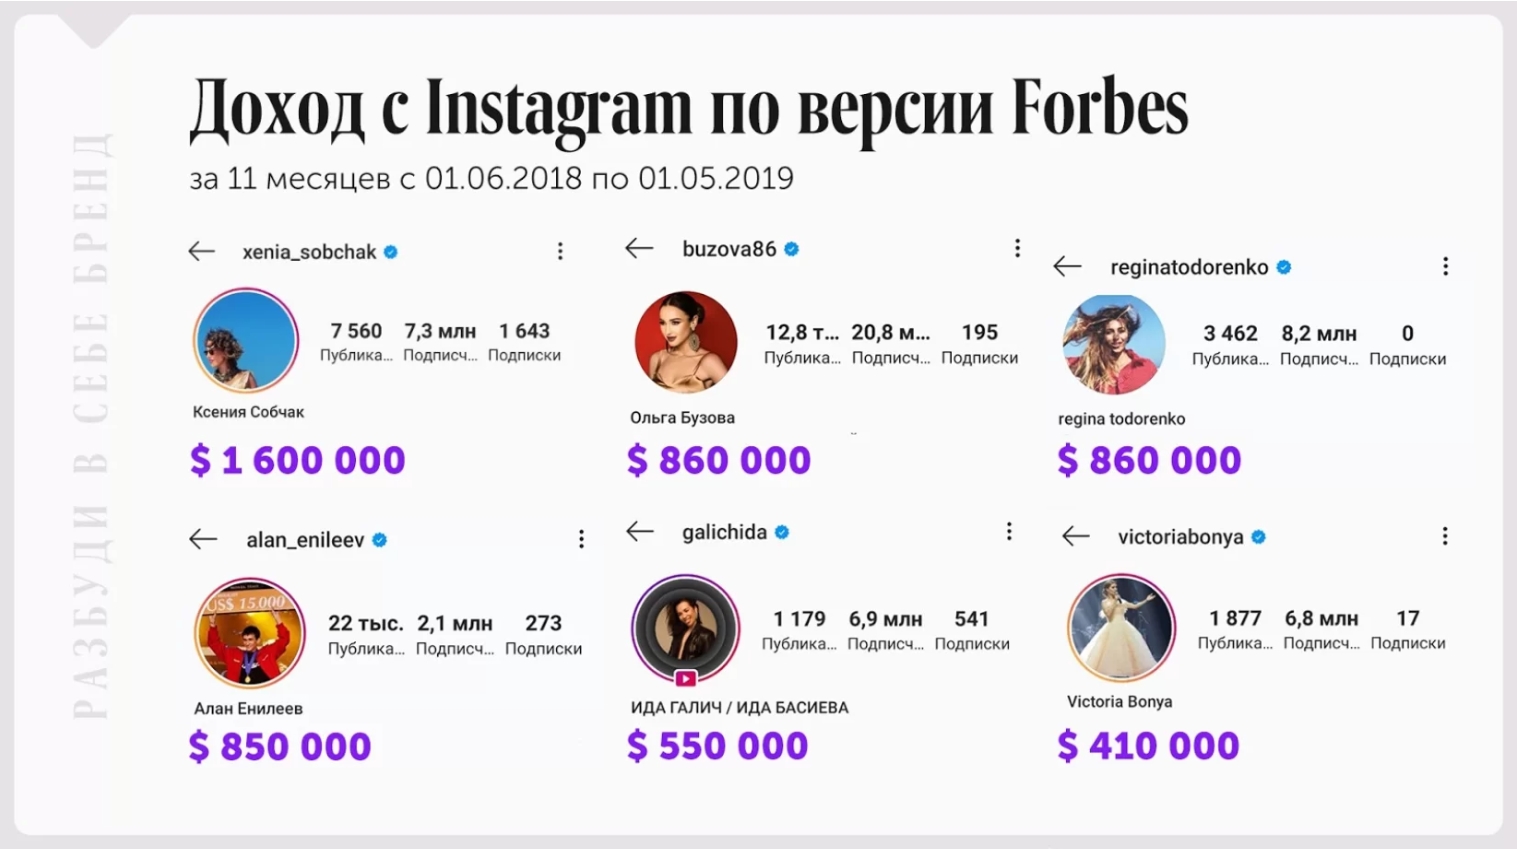 Сколько зарабатывают крупные блогеры по версии Forbes